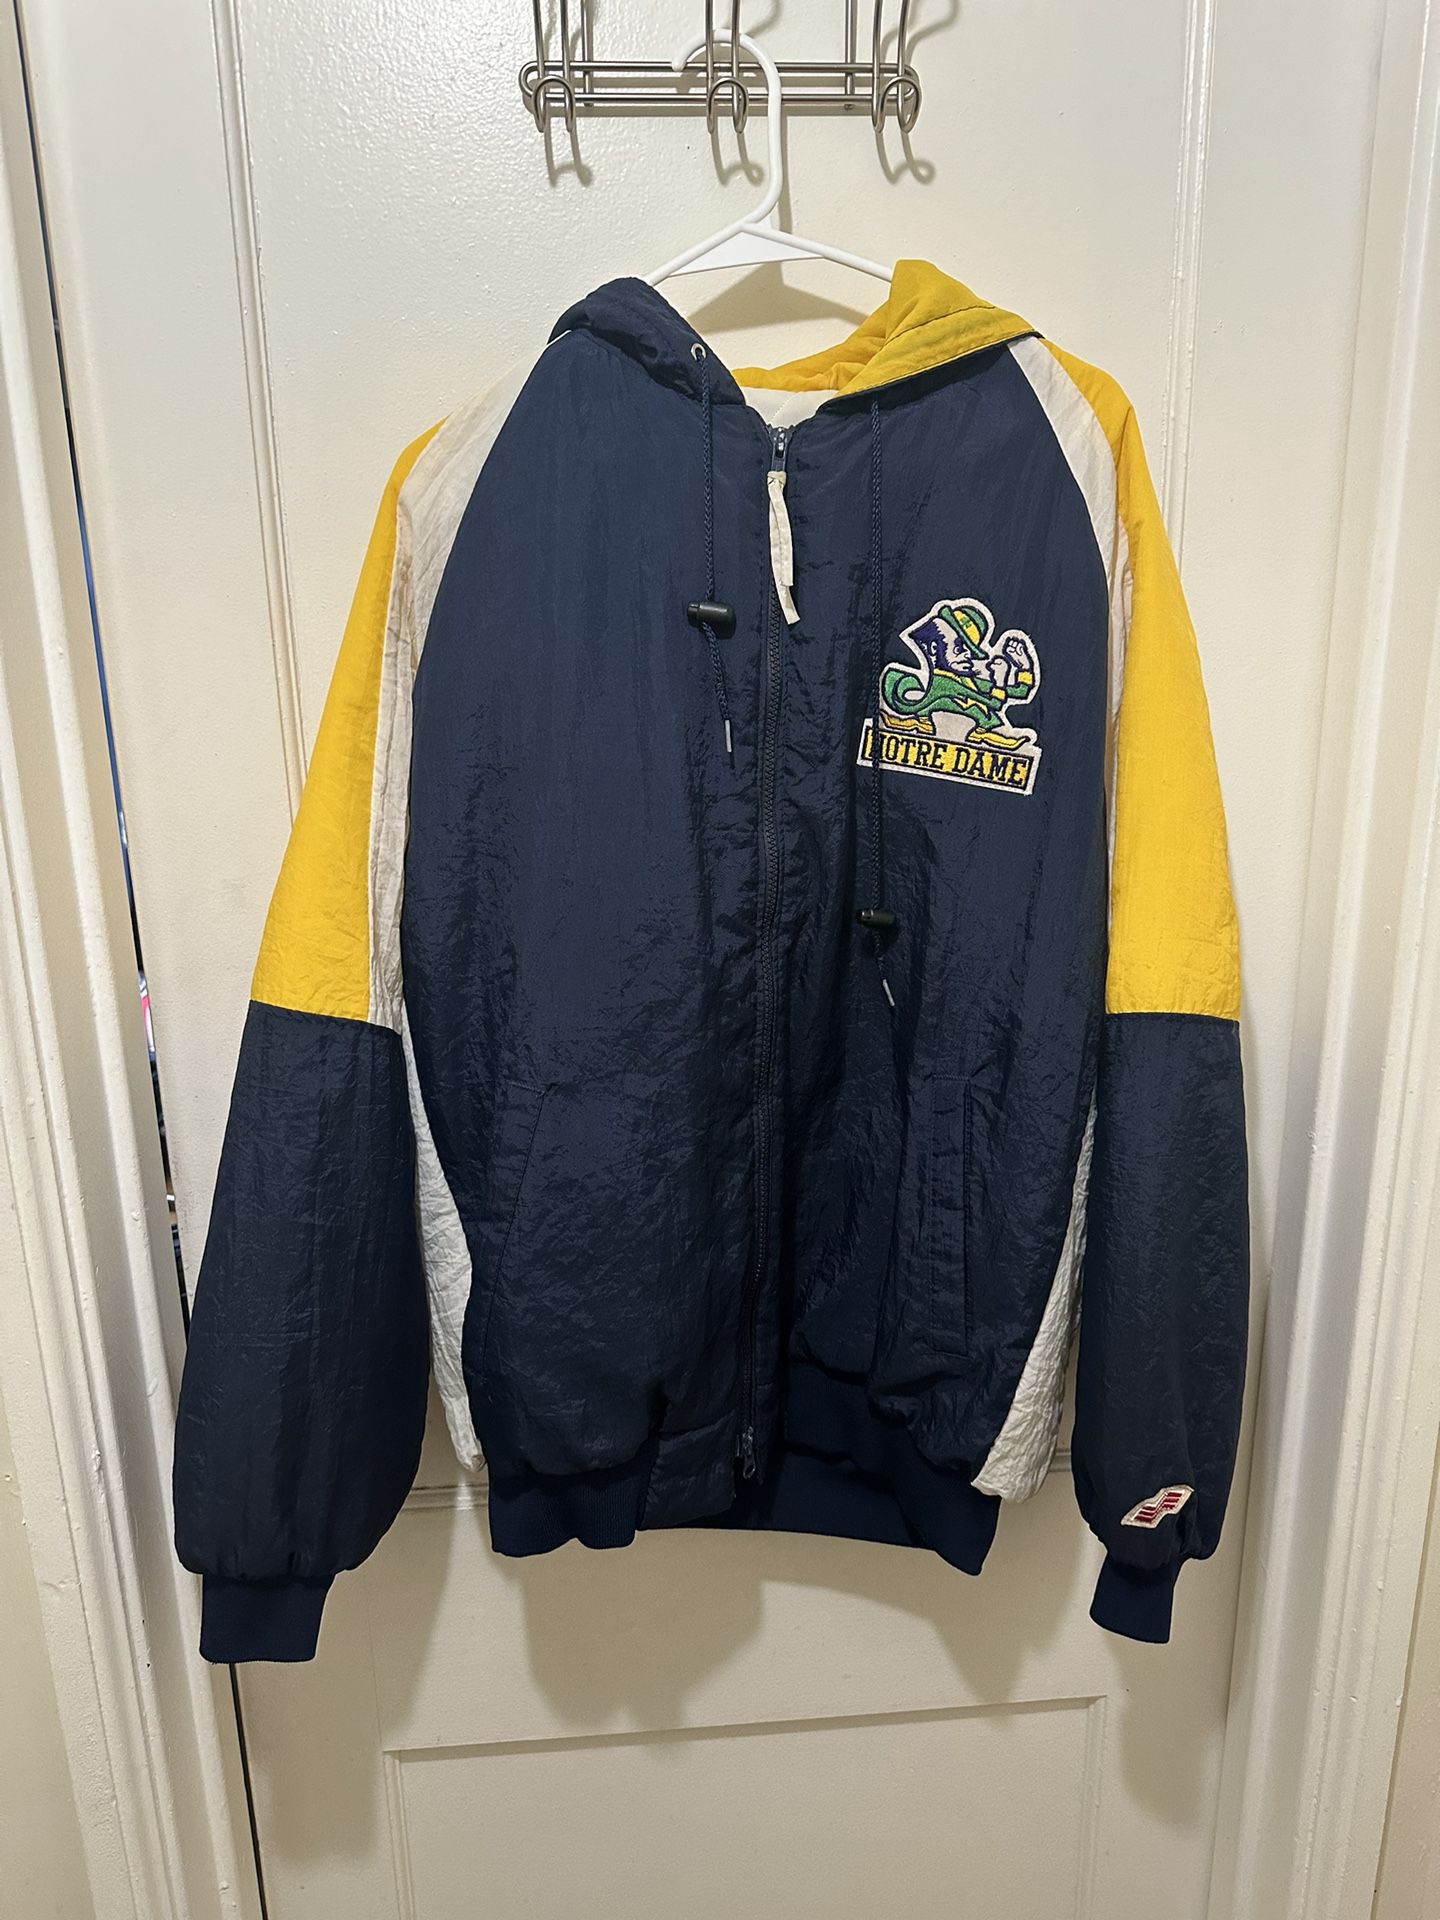 Vintage Notre Dame Zip Up Puffer jacket